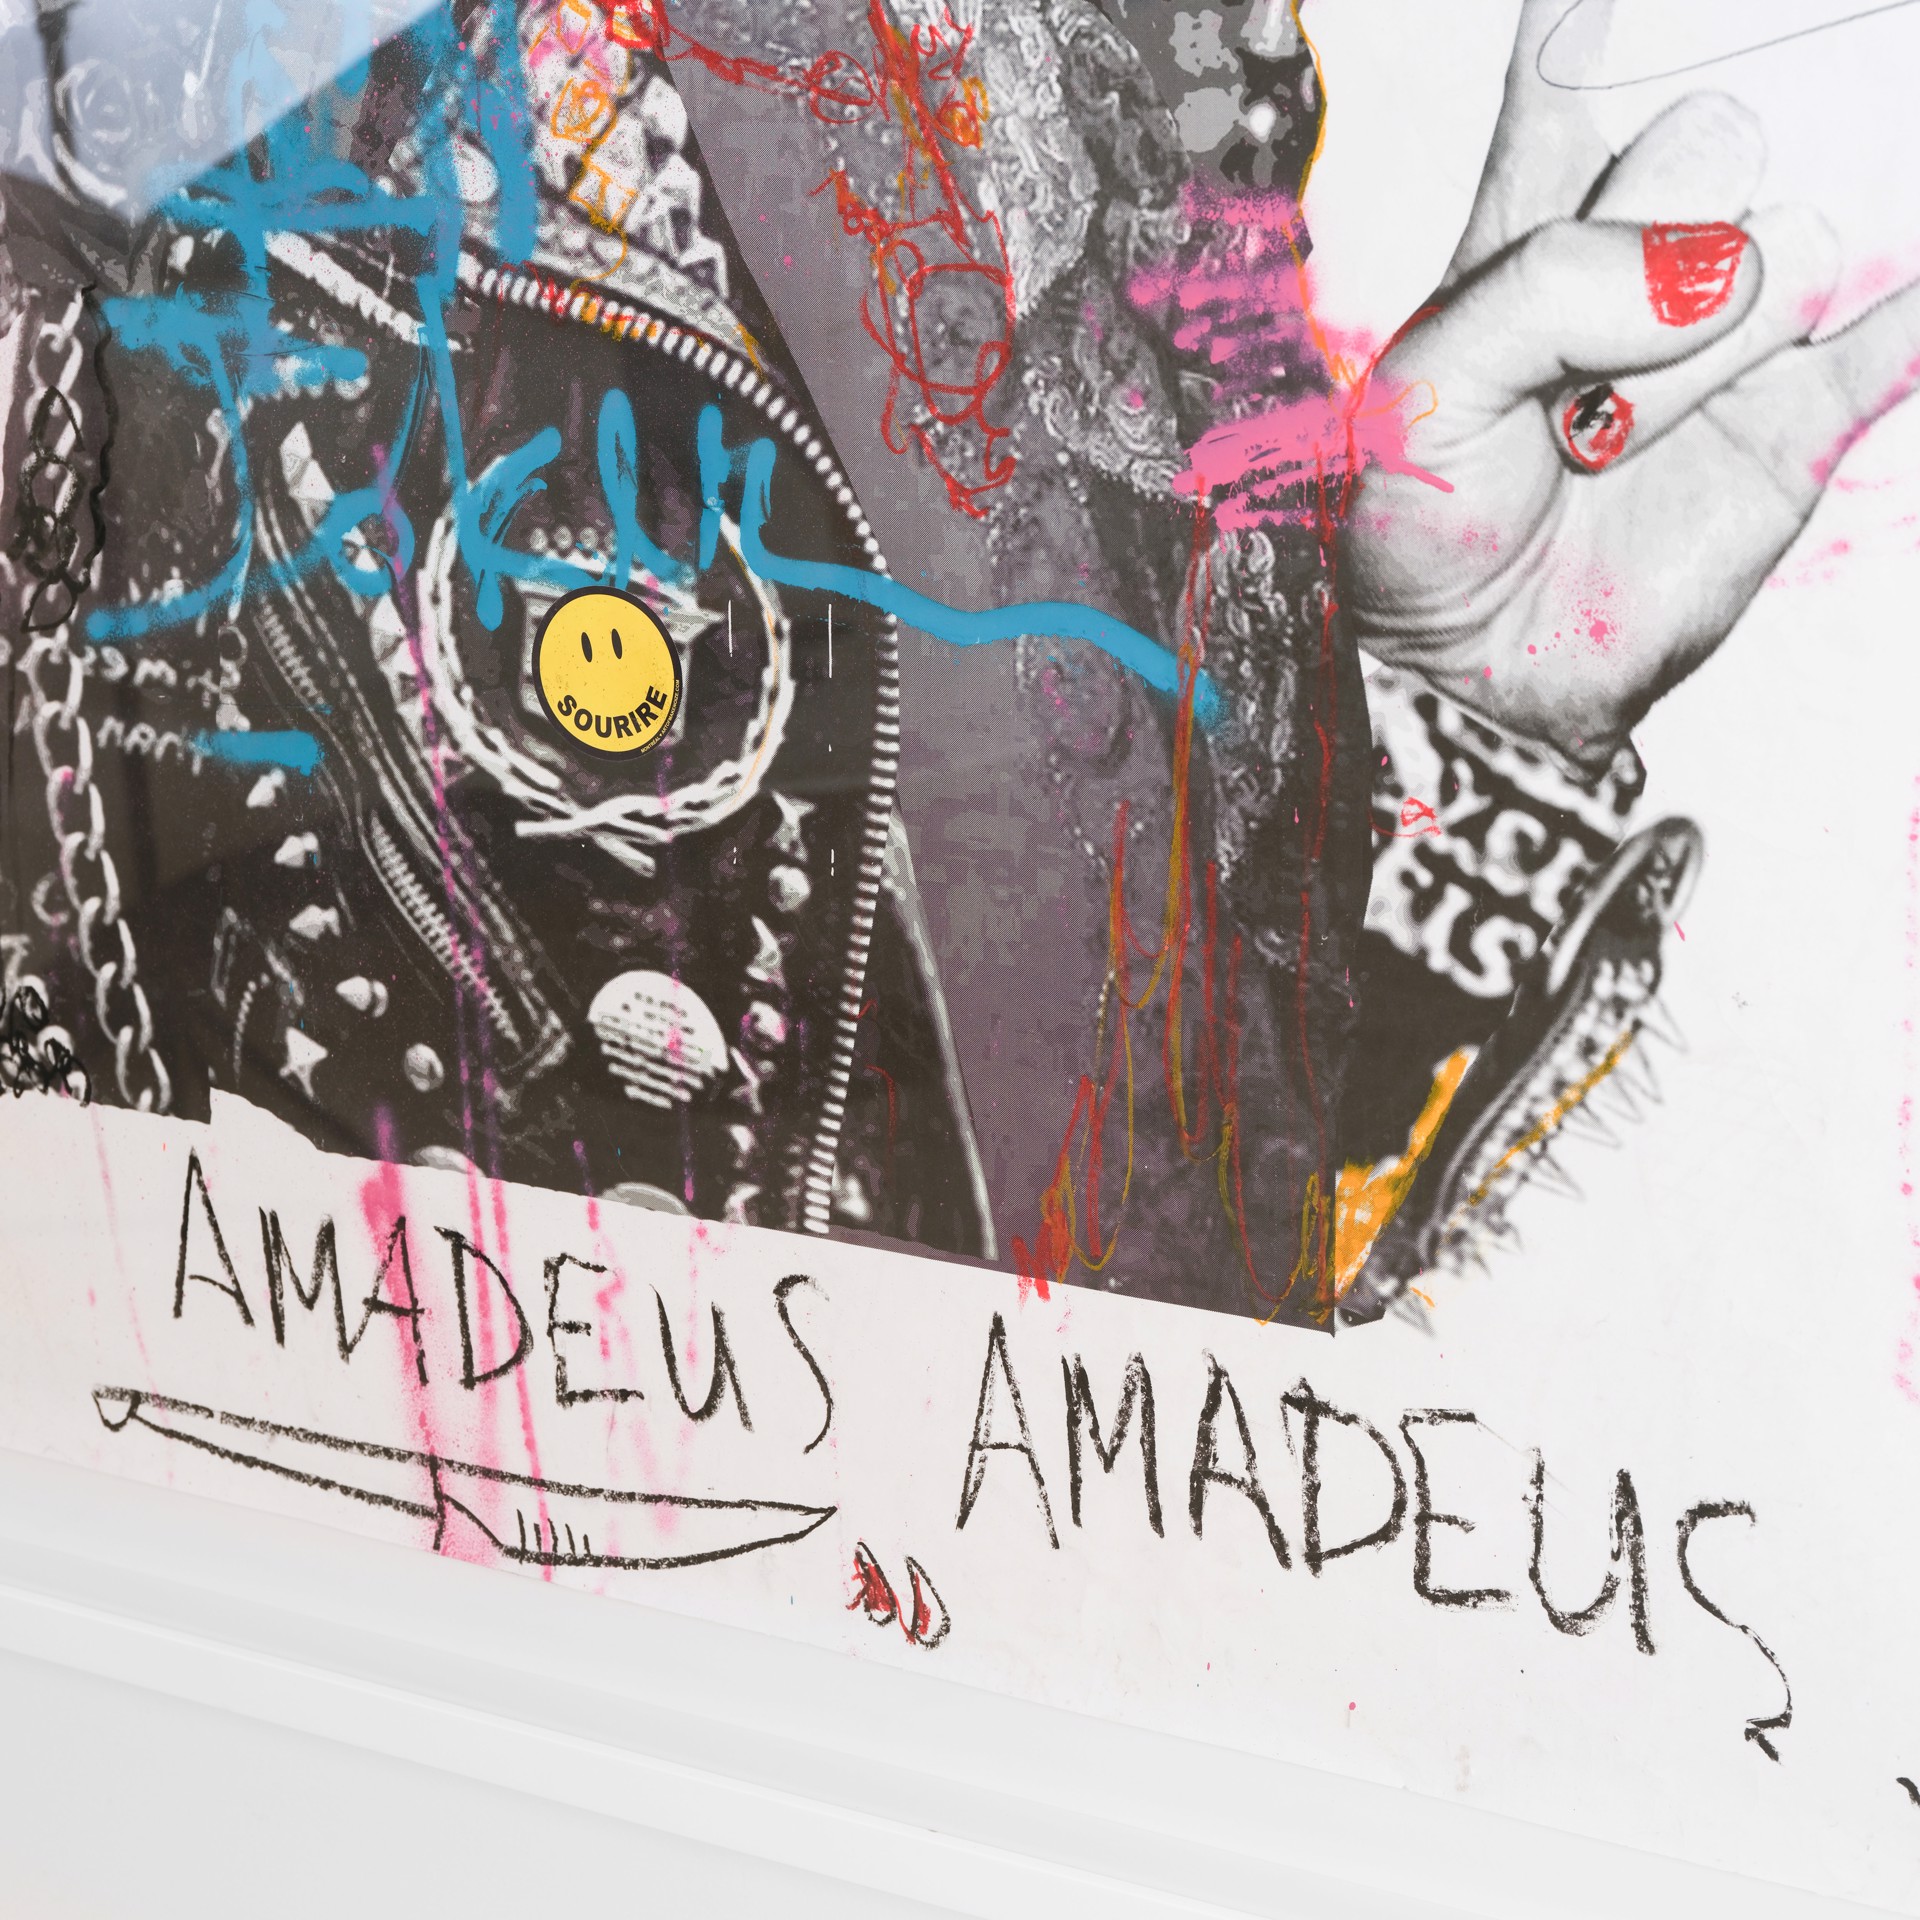 Mo'Z "Amadeus Amadeus" by Stikki Peaches